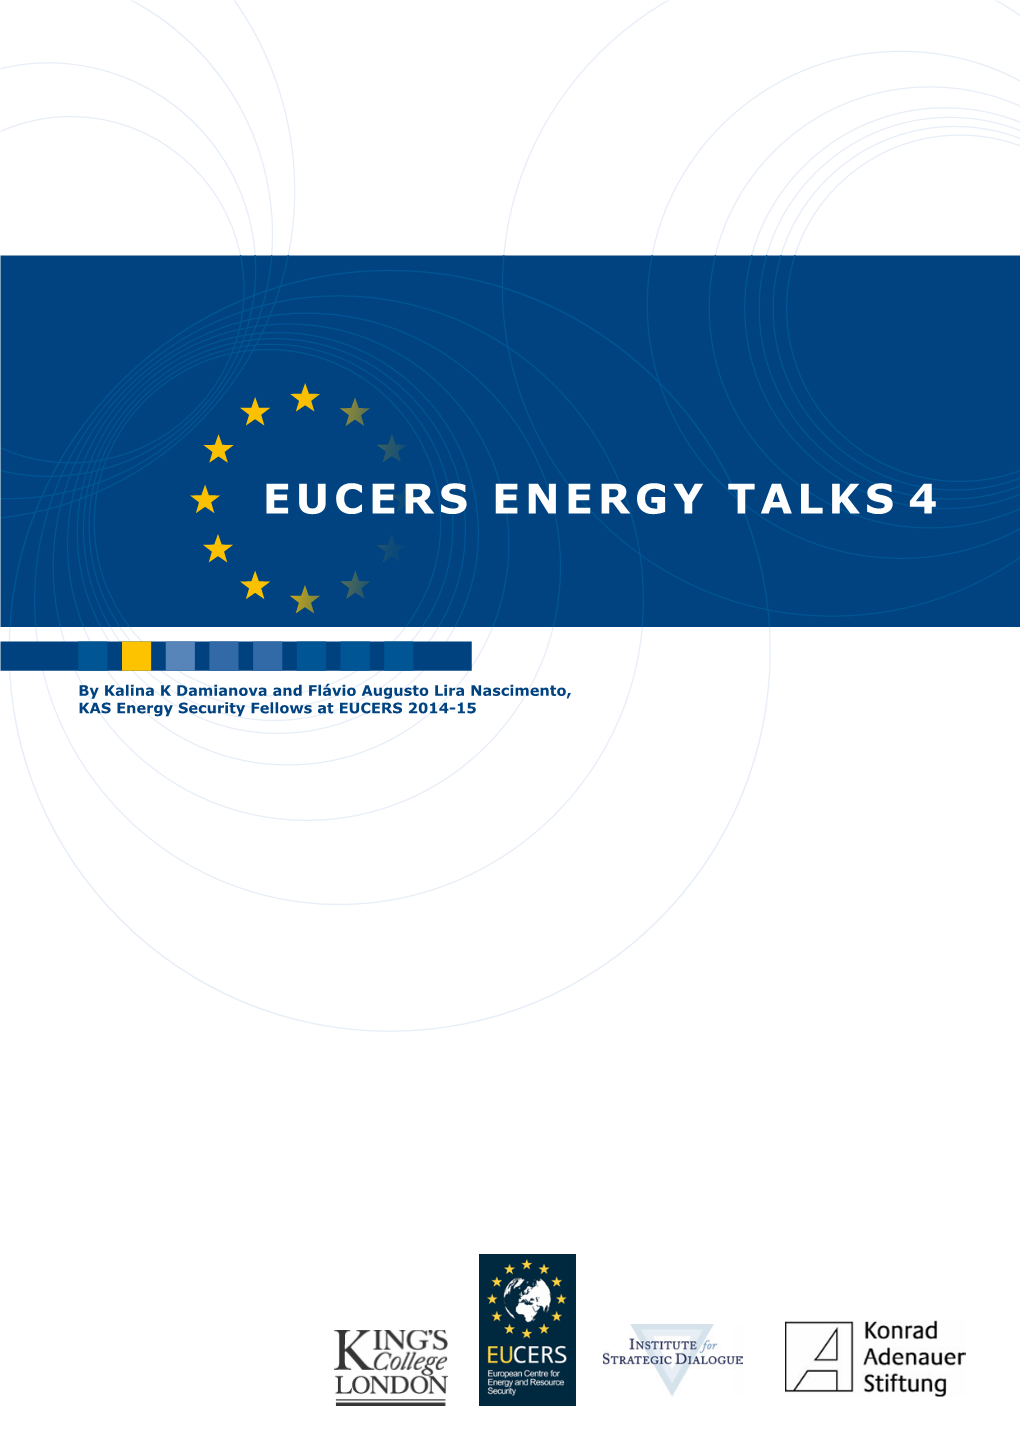 Eucers Energy Talks 4